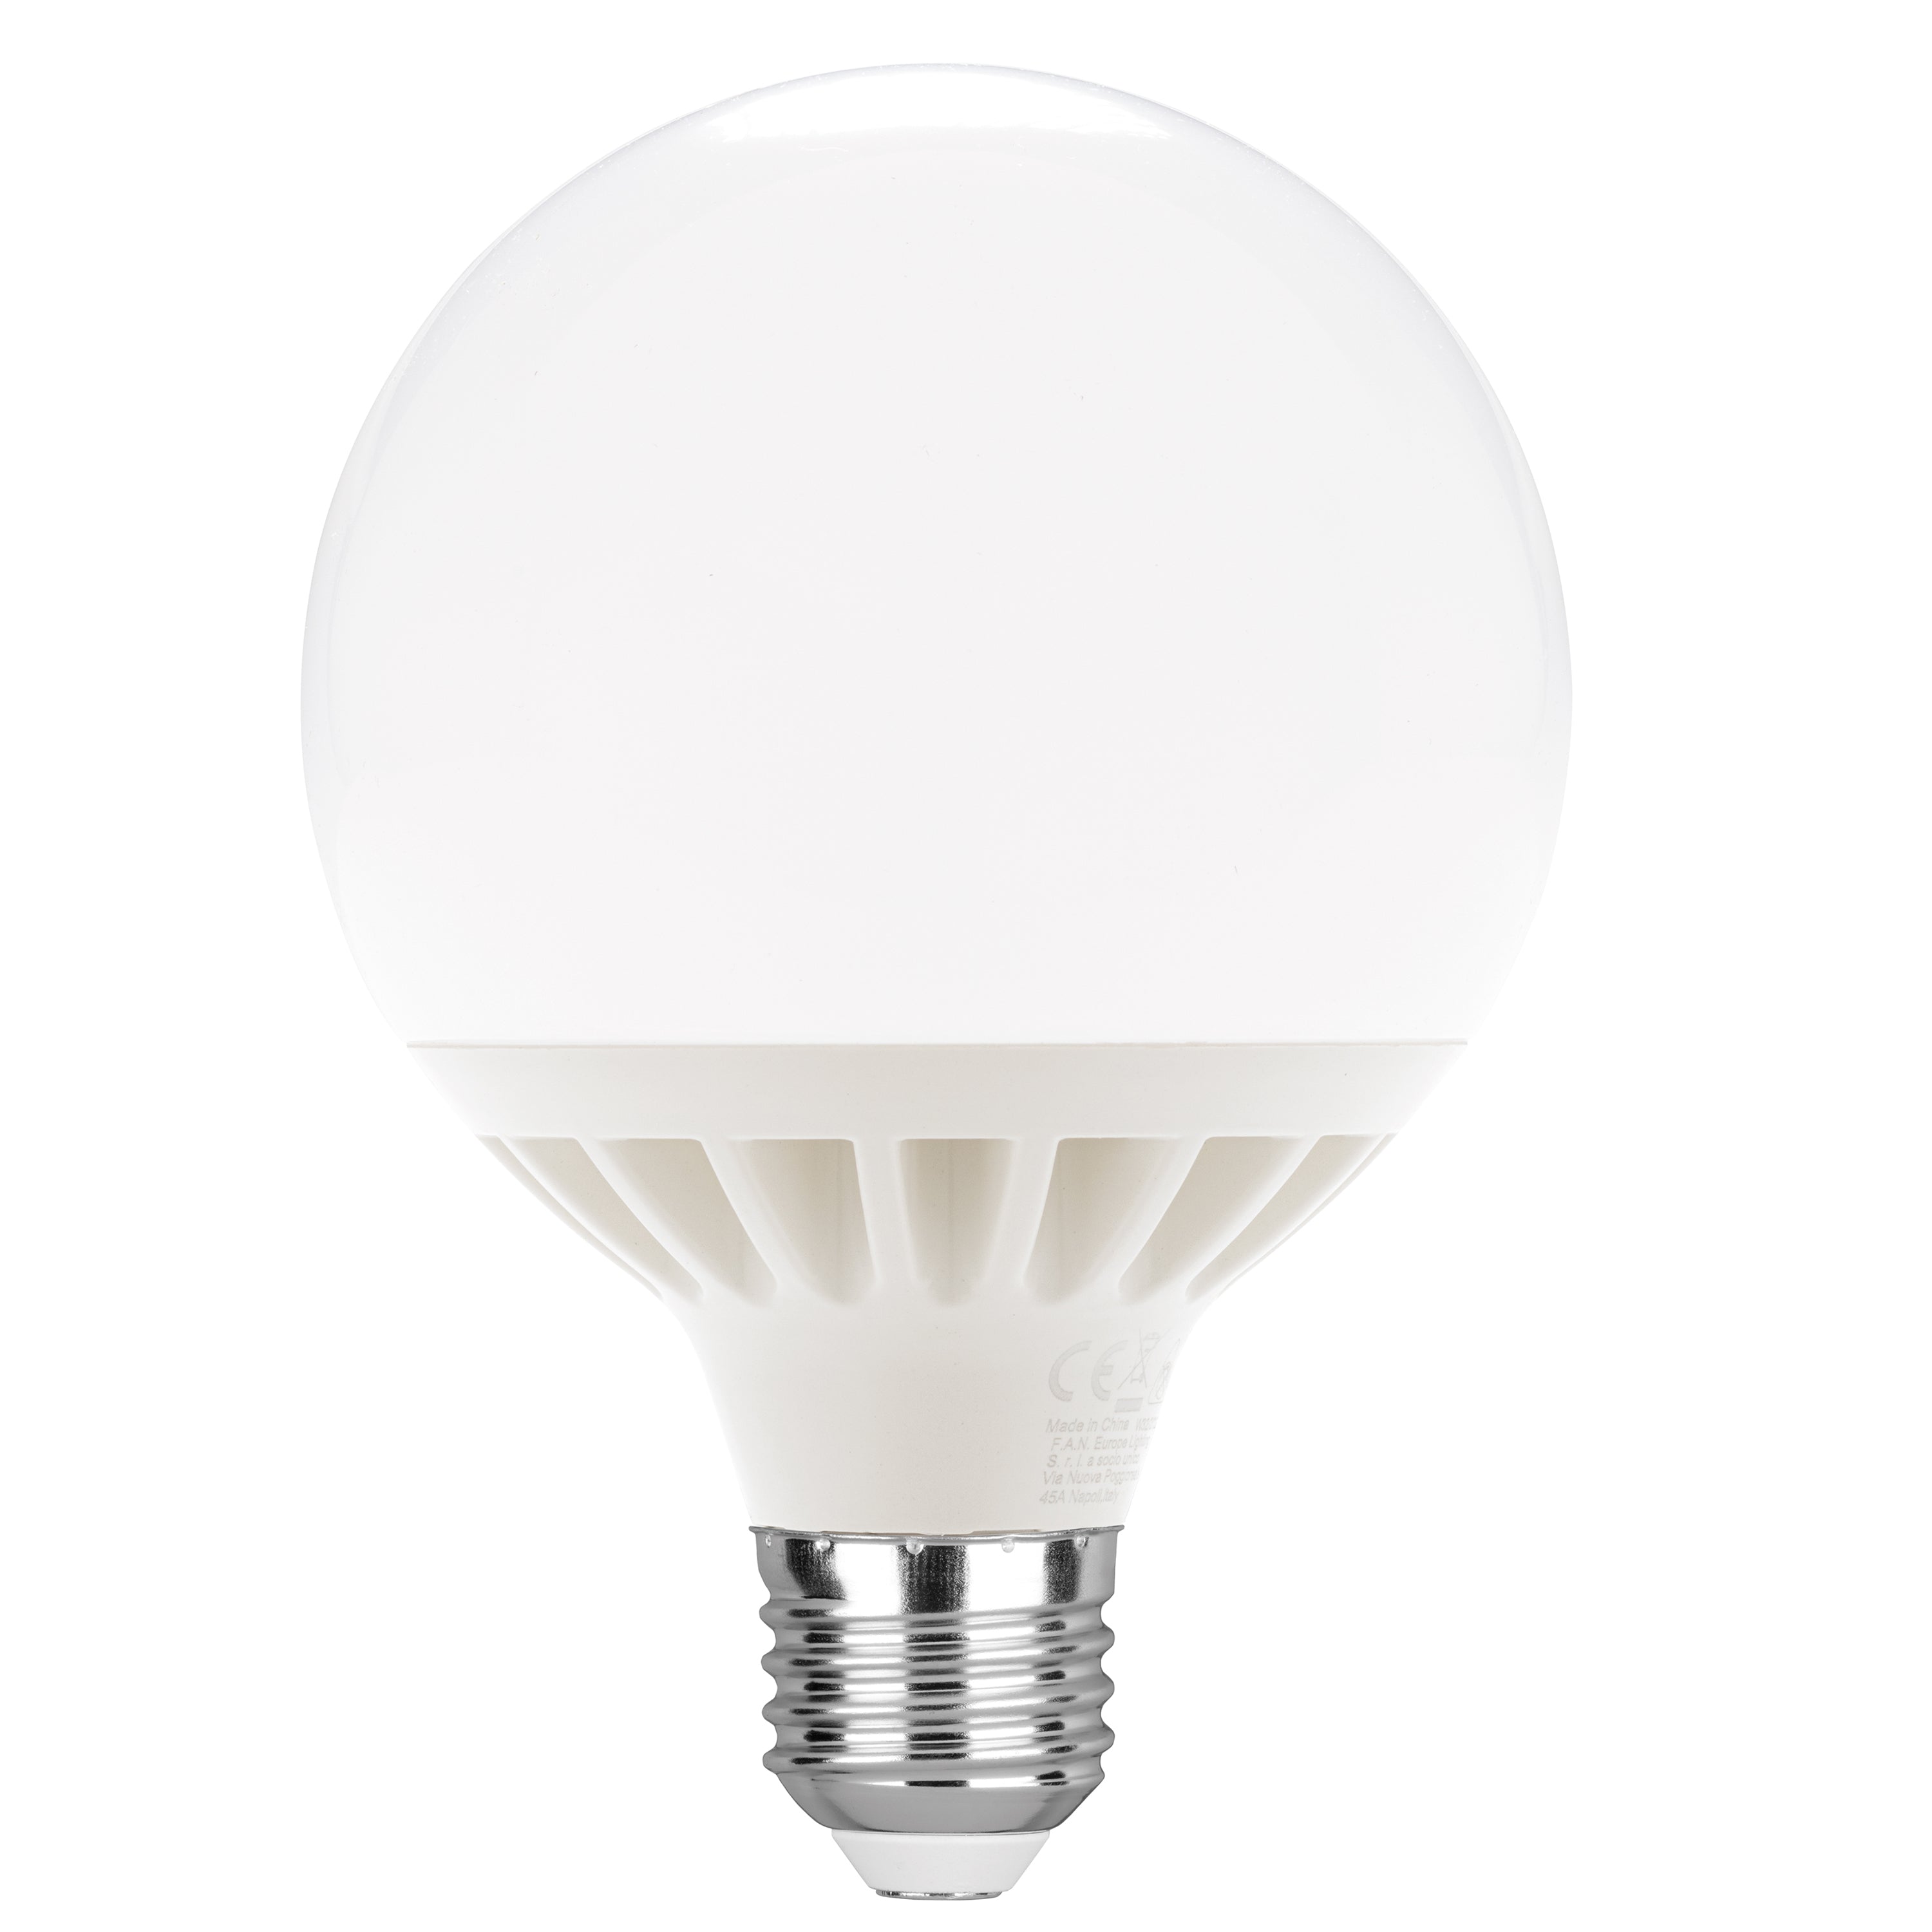 Lampada led a globo E27 18W con luce bianca calda o fredda